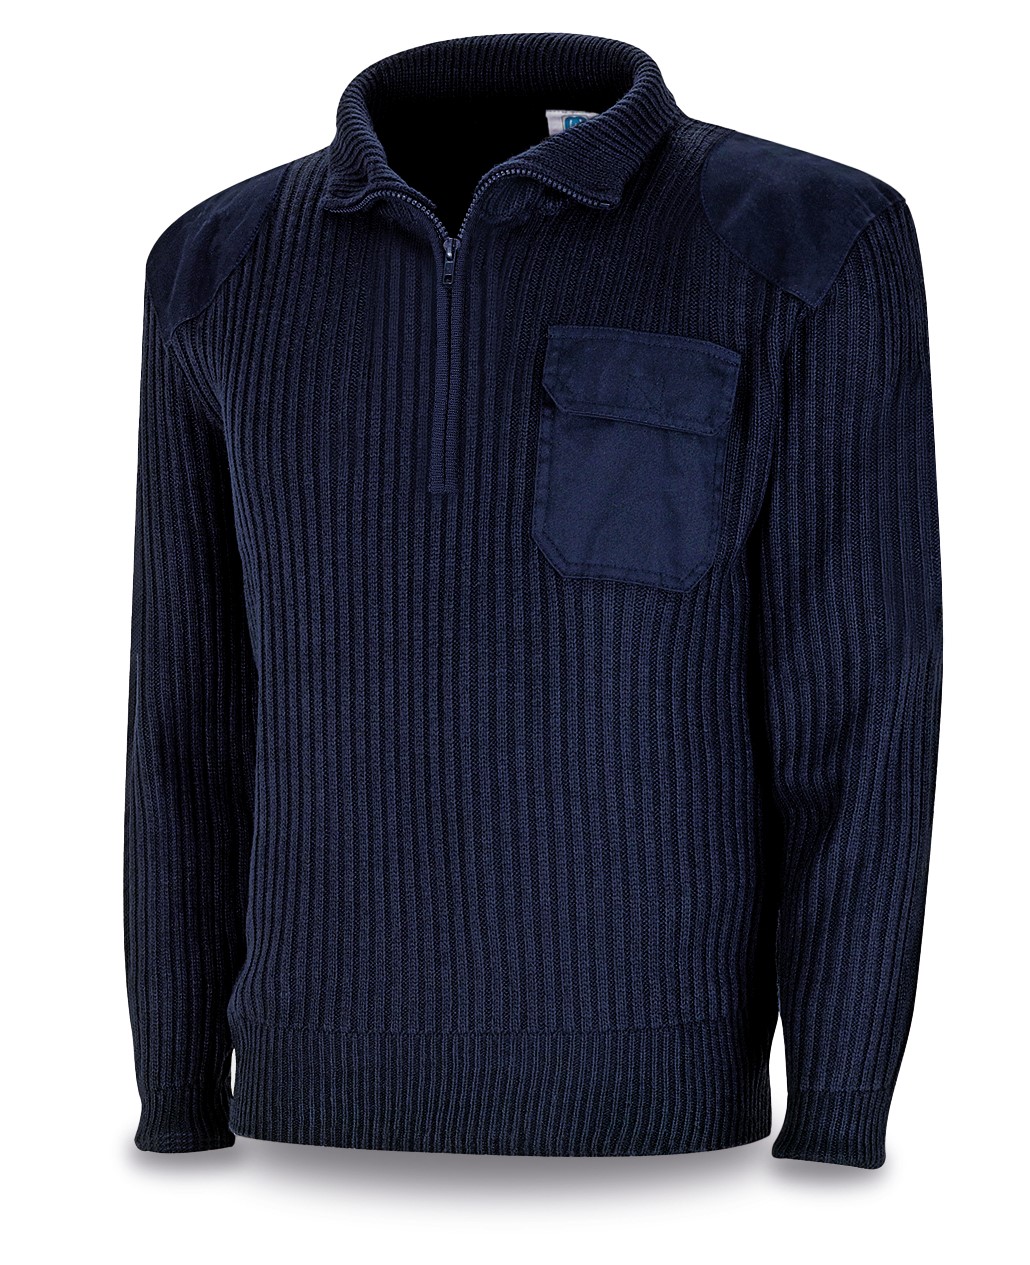 1288-JCA Workwear Jerseys Navy blue police type sweater 450 gr.